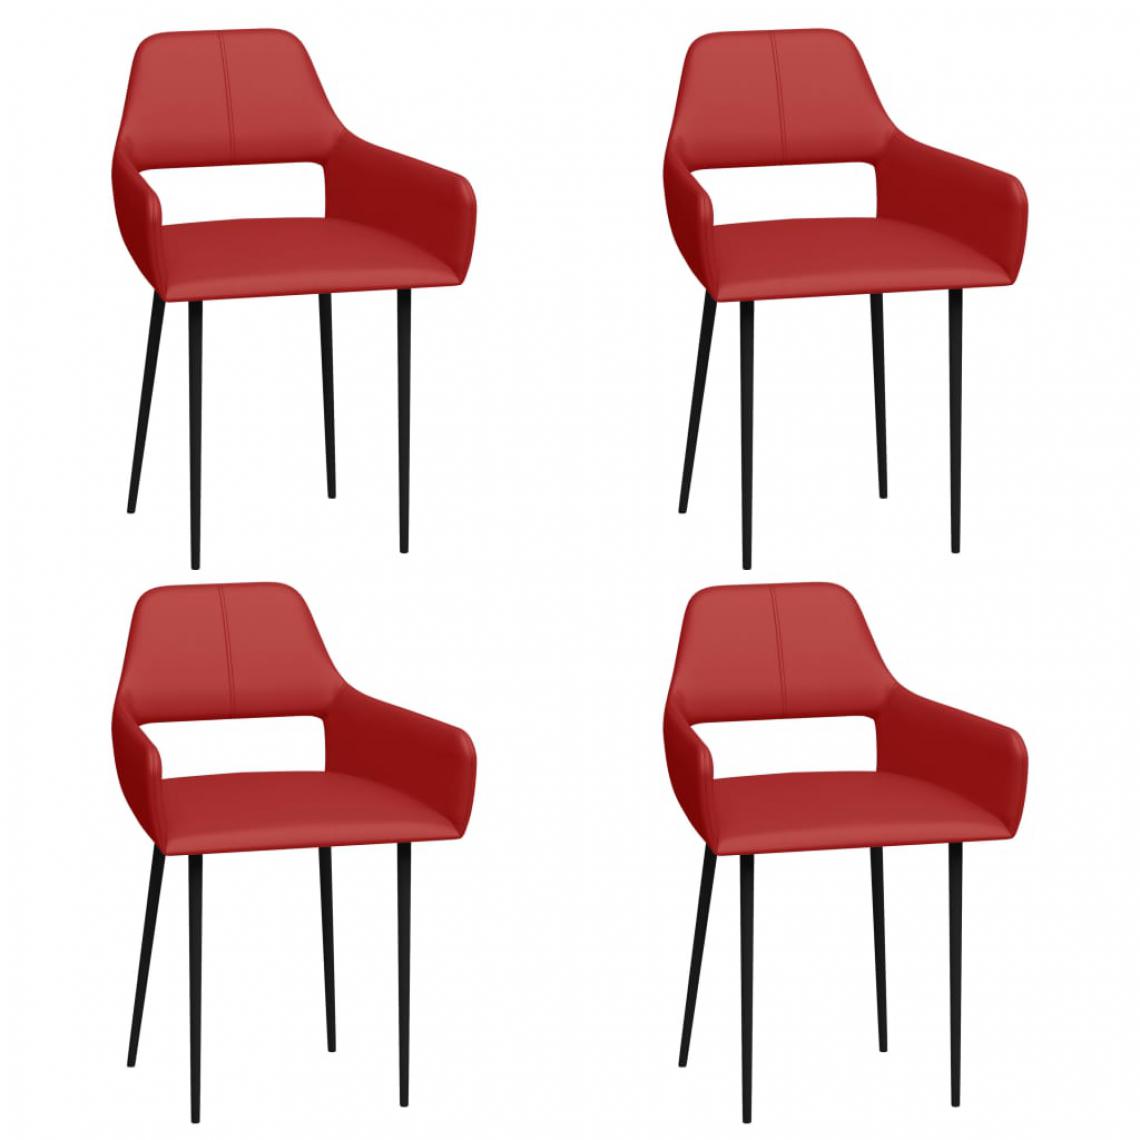 Icaverne - Stylé Fauteuils et chaises famille Doha Chaises de salle à manger 4 pcs Rouge Similicuir - Chaises